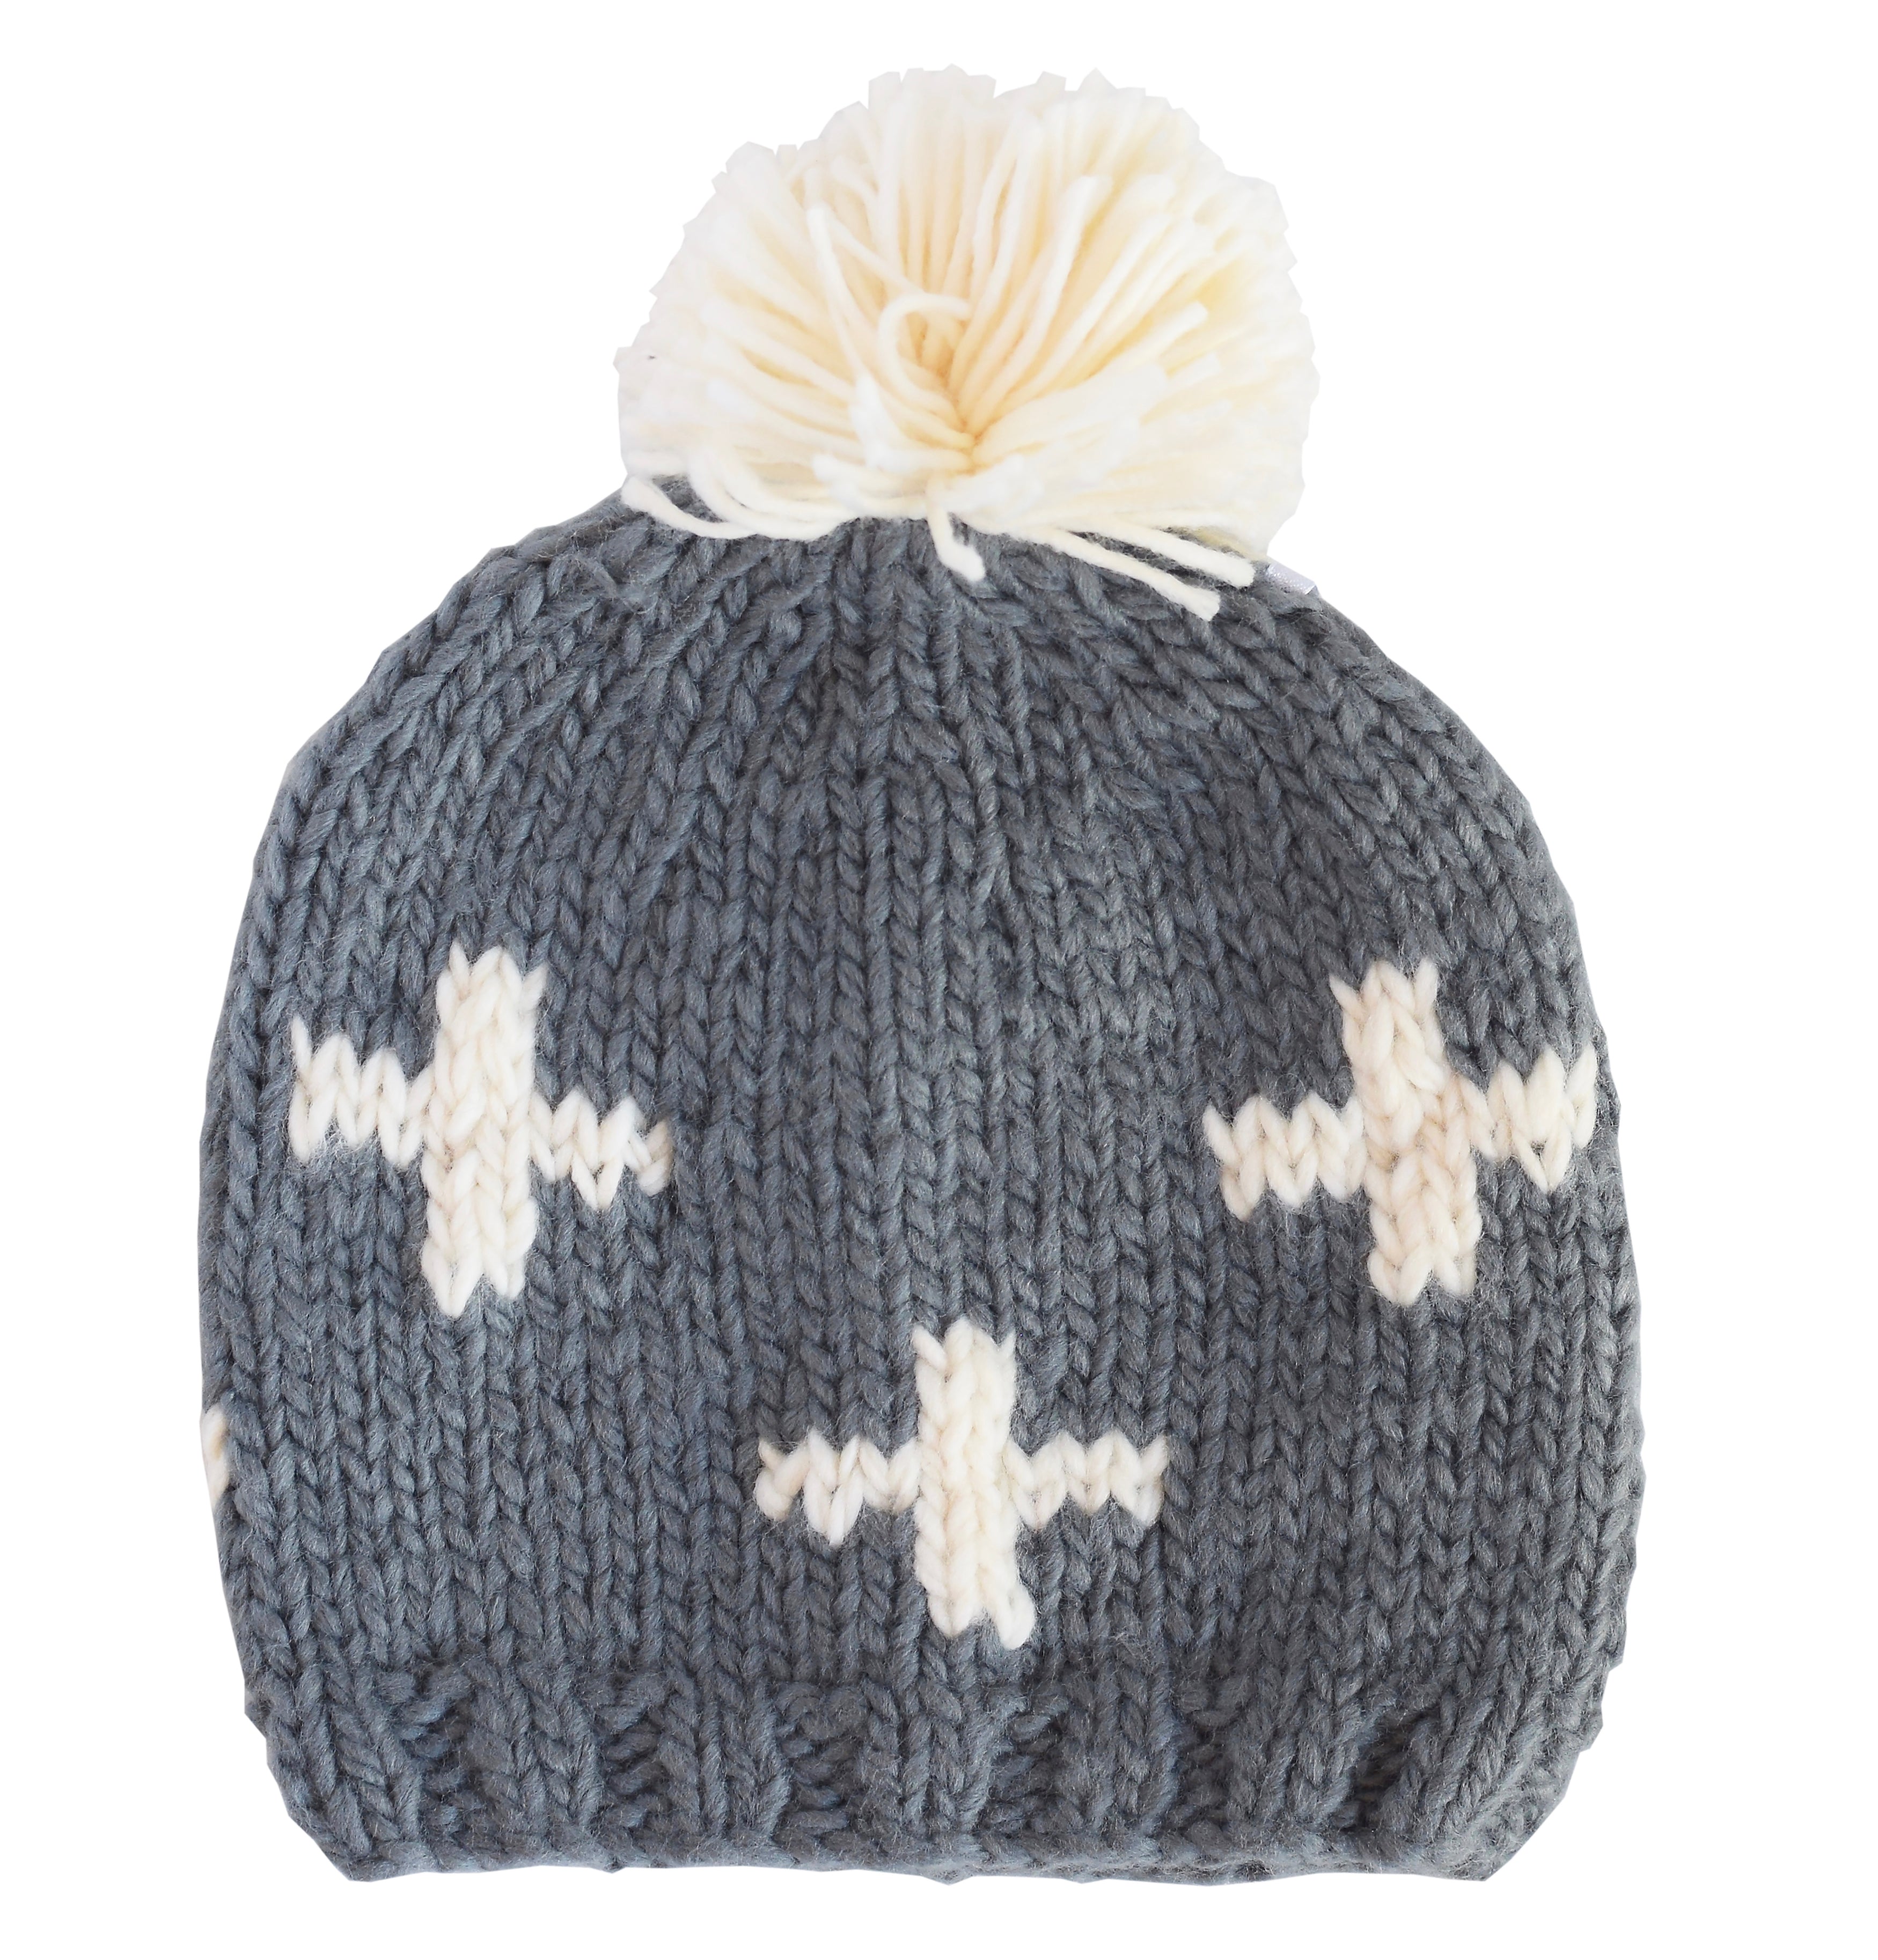 Miko Swiss Cross Knit Hat